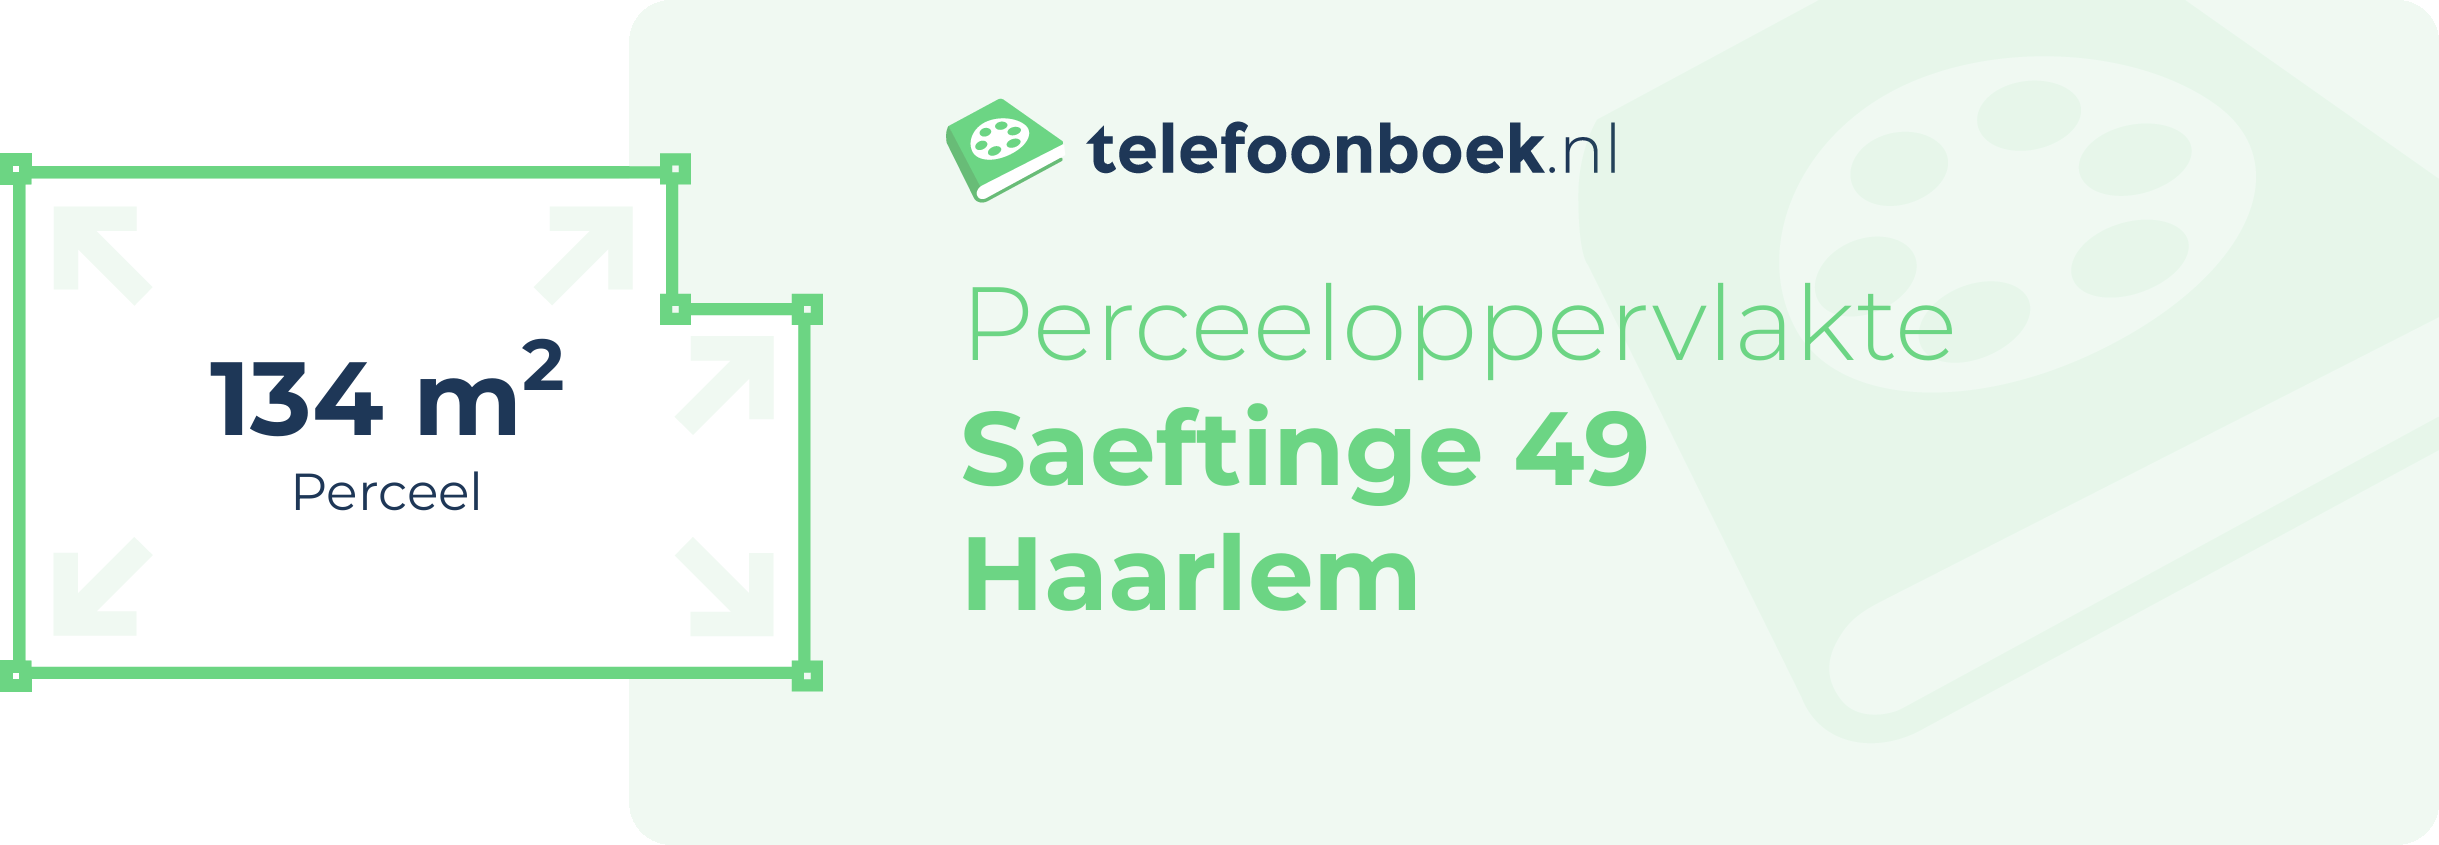 Perceeloppervlakte Saeftinge 49 Haarlem